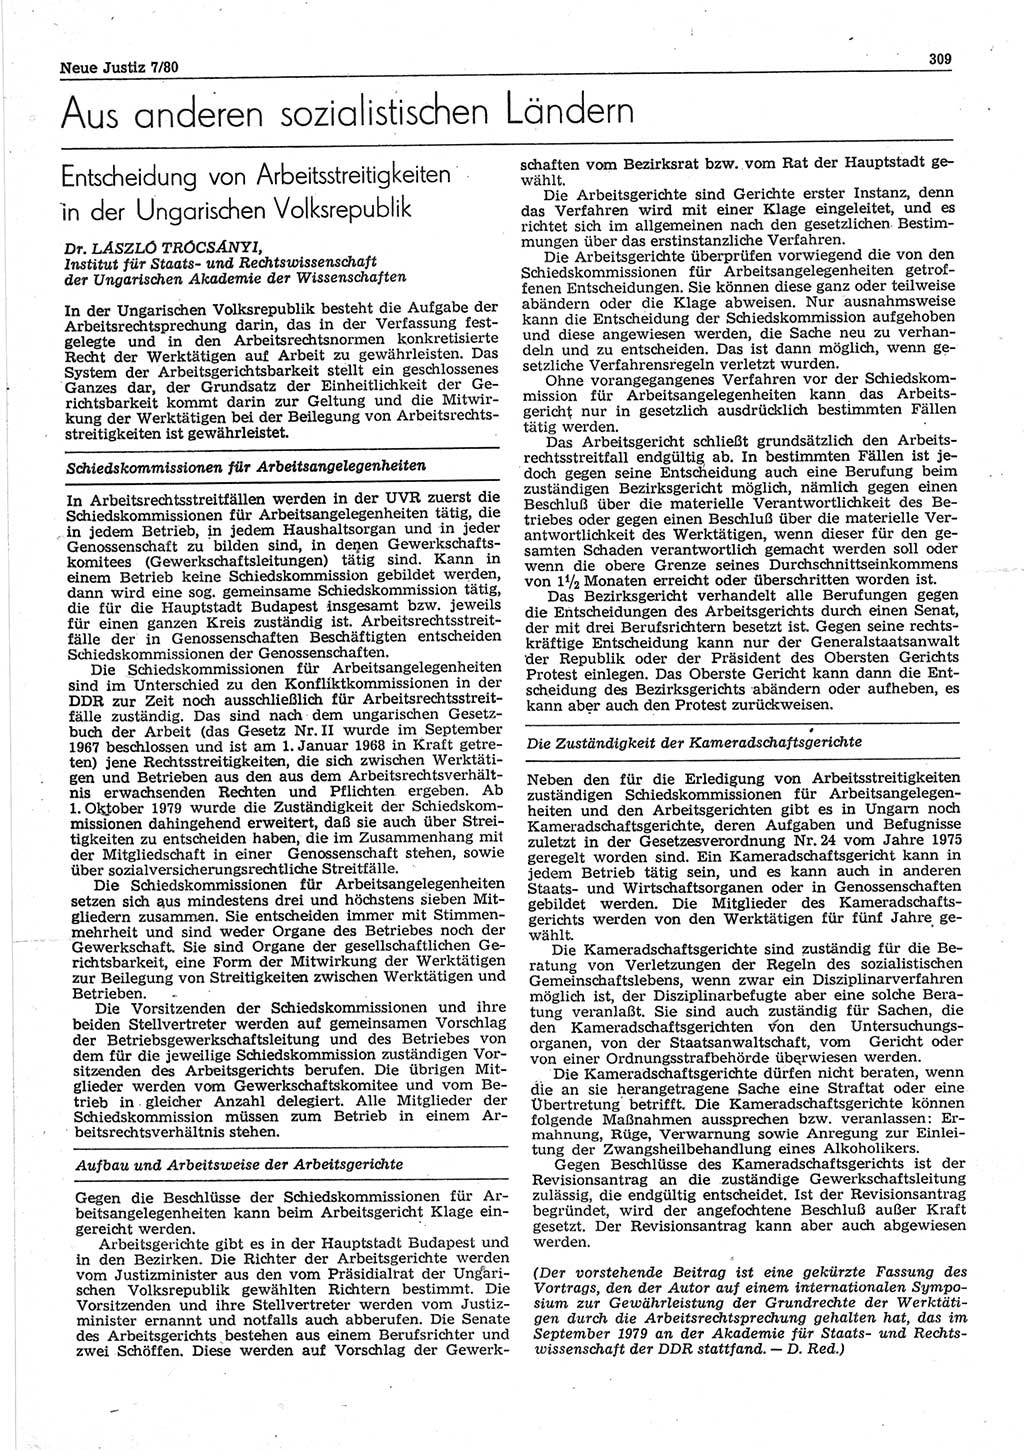 Neue Justiz (NJ), Zeitschrift für sozialistisches Recht und Gesetzlichkeit [Deutsche Demokratische Republik (DDR)], 34. Jahrgang 1980, Seite 309 (NJ DDR 1980, S. 309)